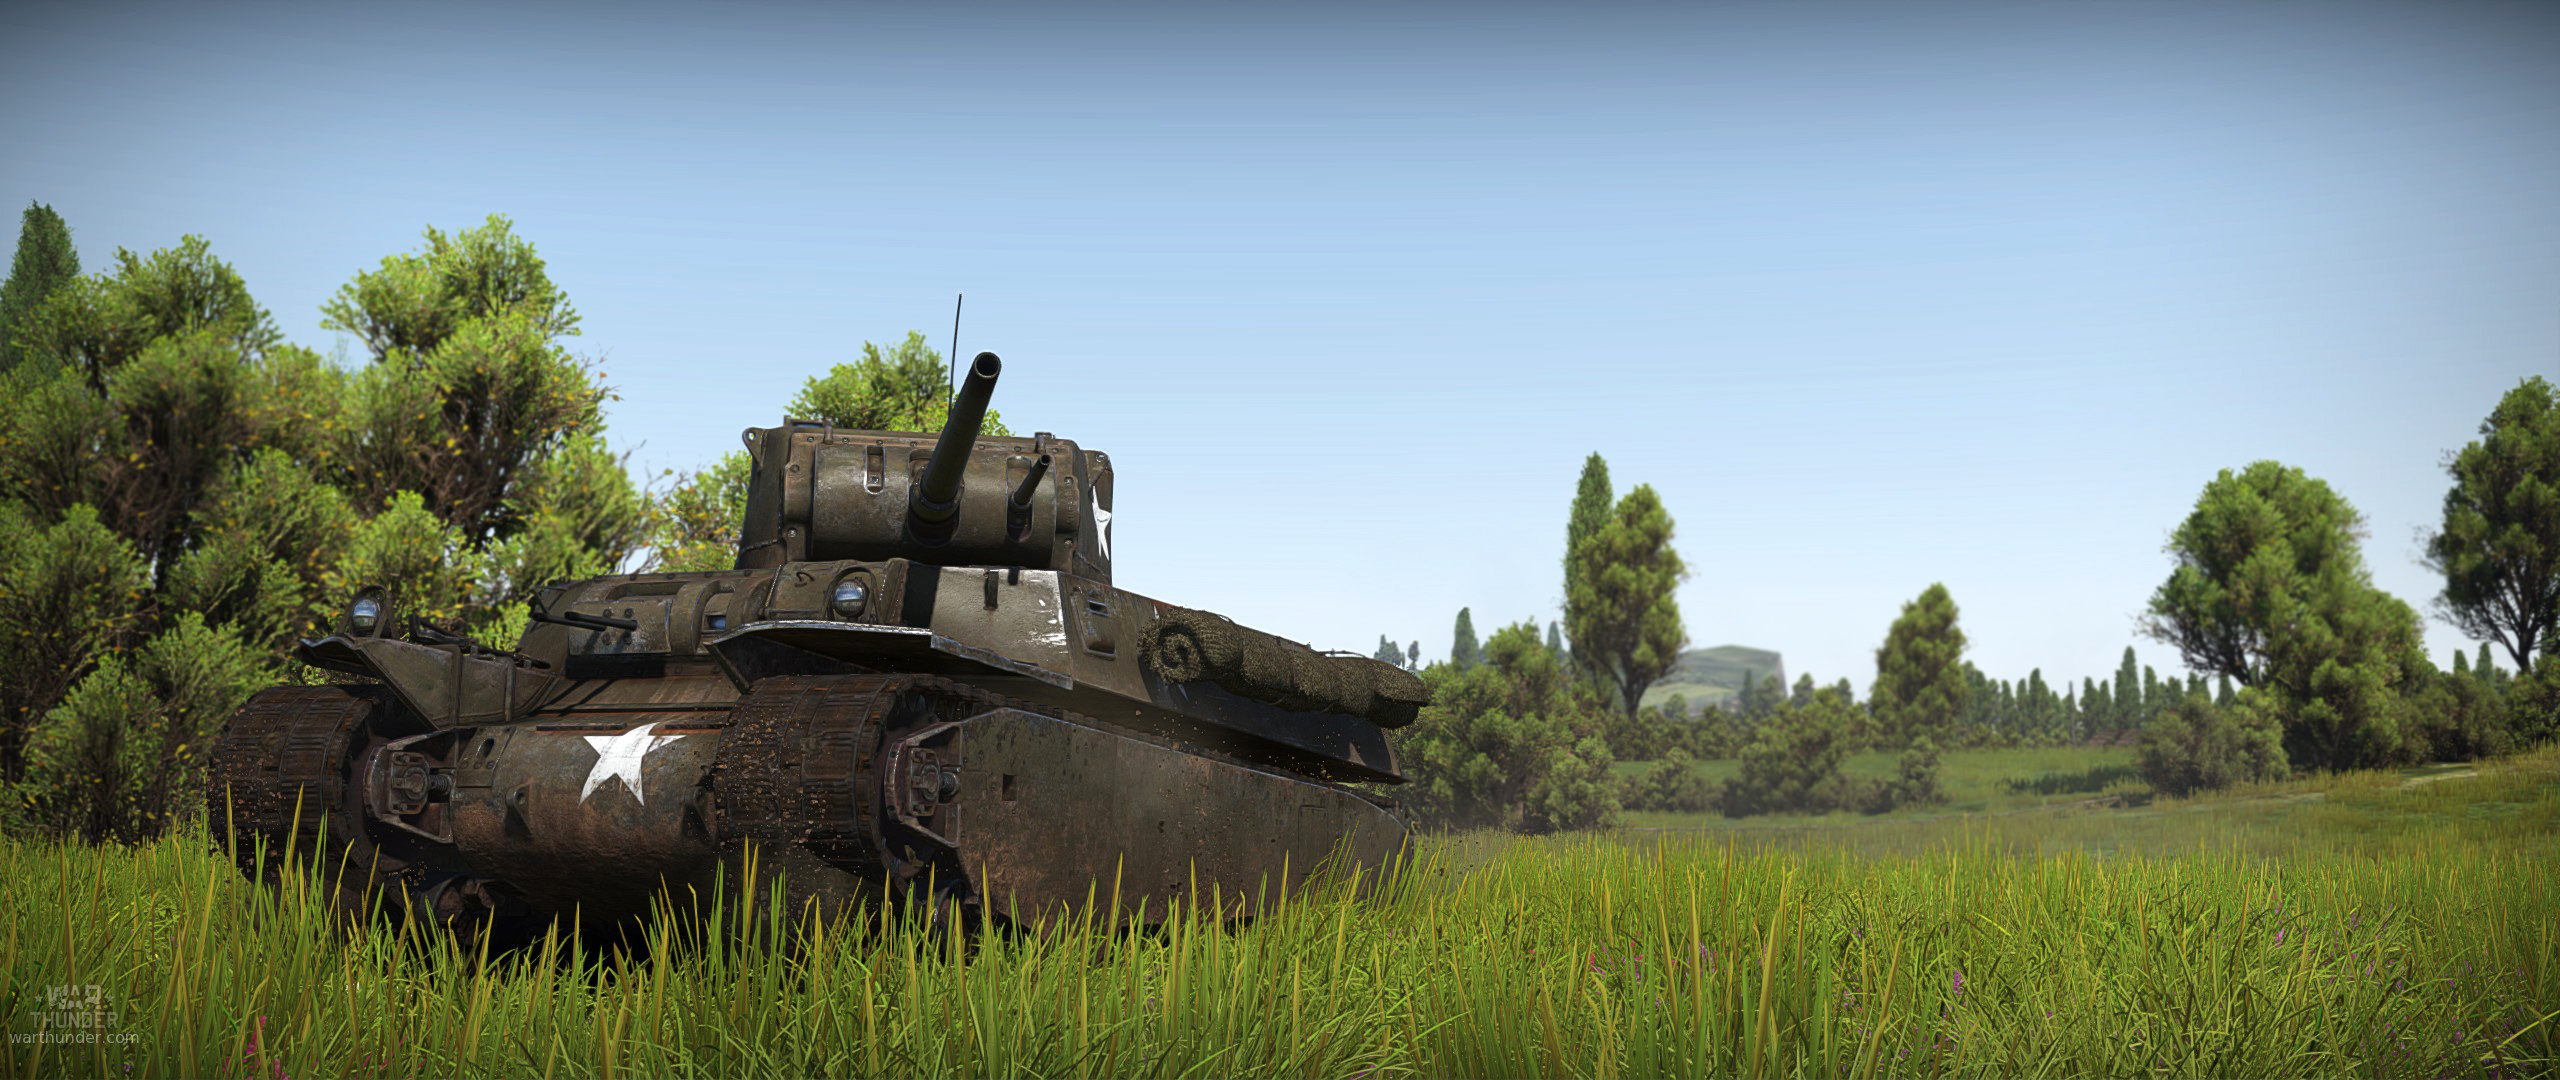 M6a1 War Thunder